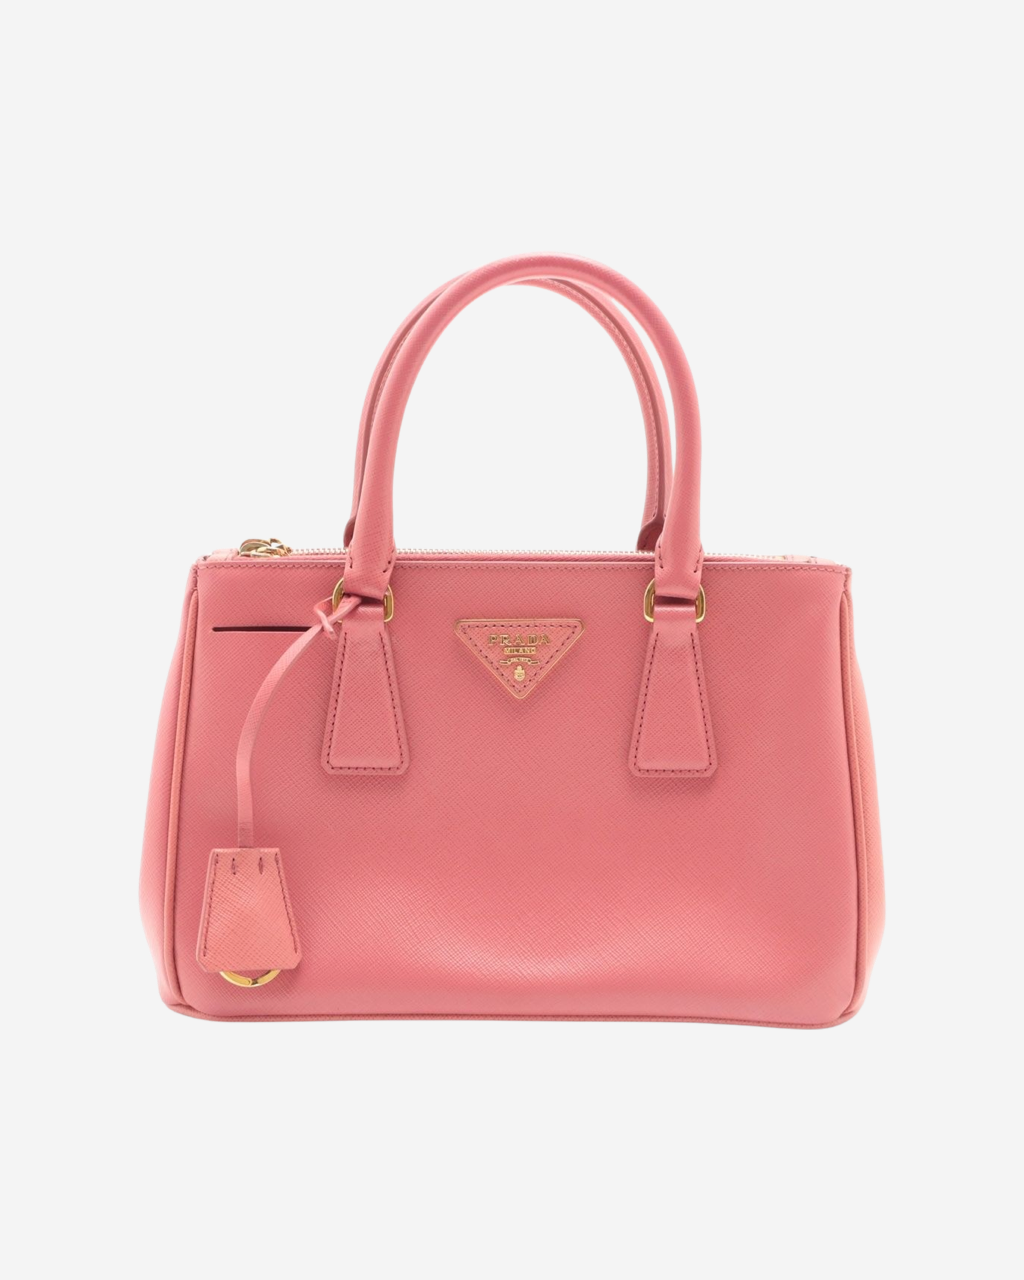 Prada Galleria Saffiano Girl Bag